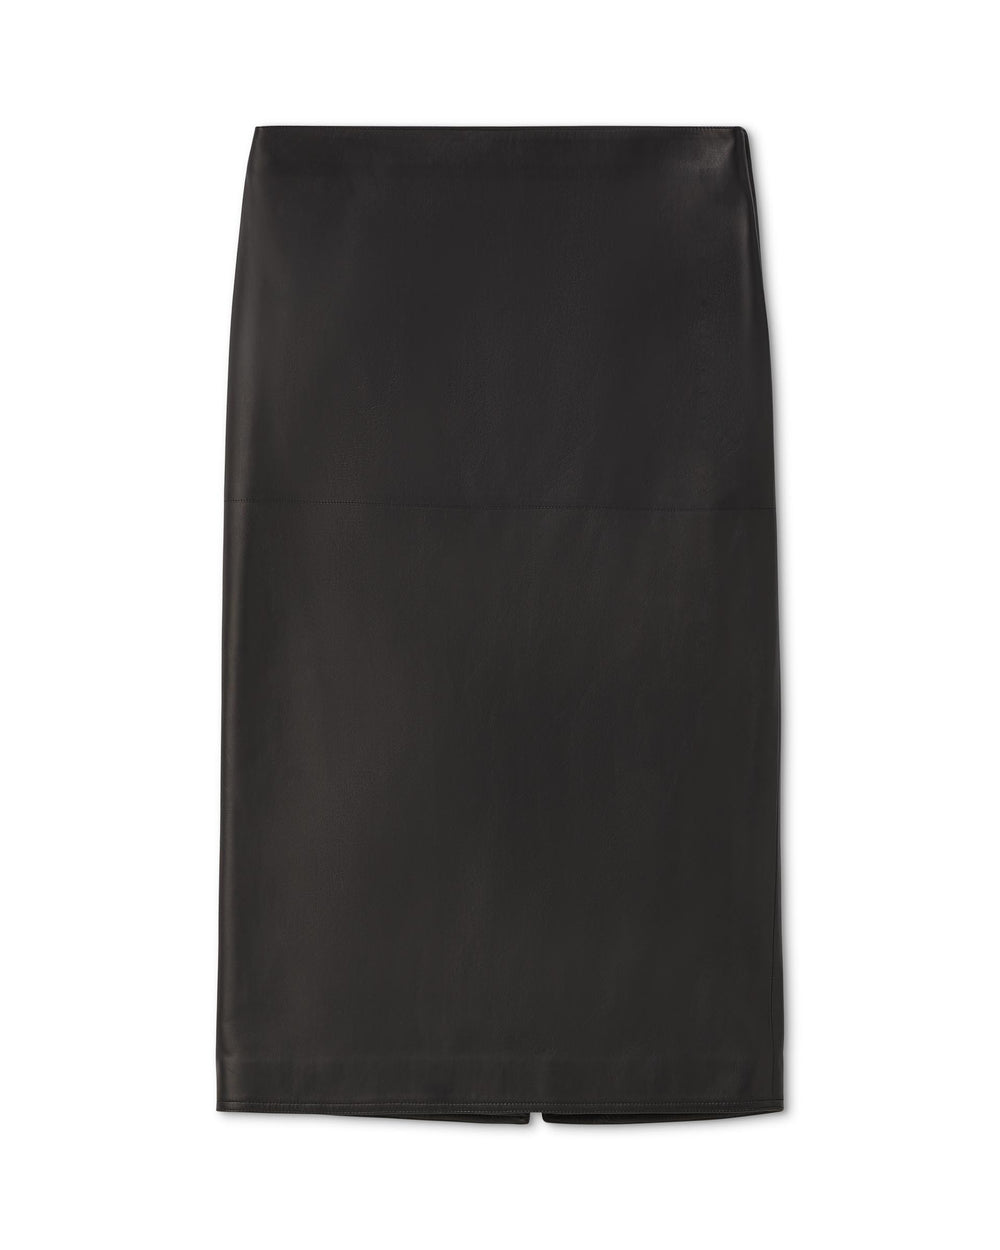 Nova Skirt in Nappa Leather, Black